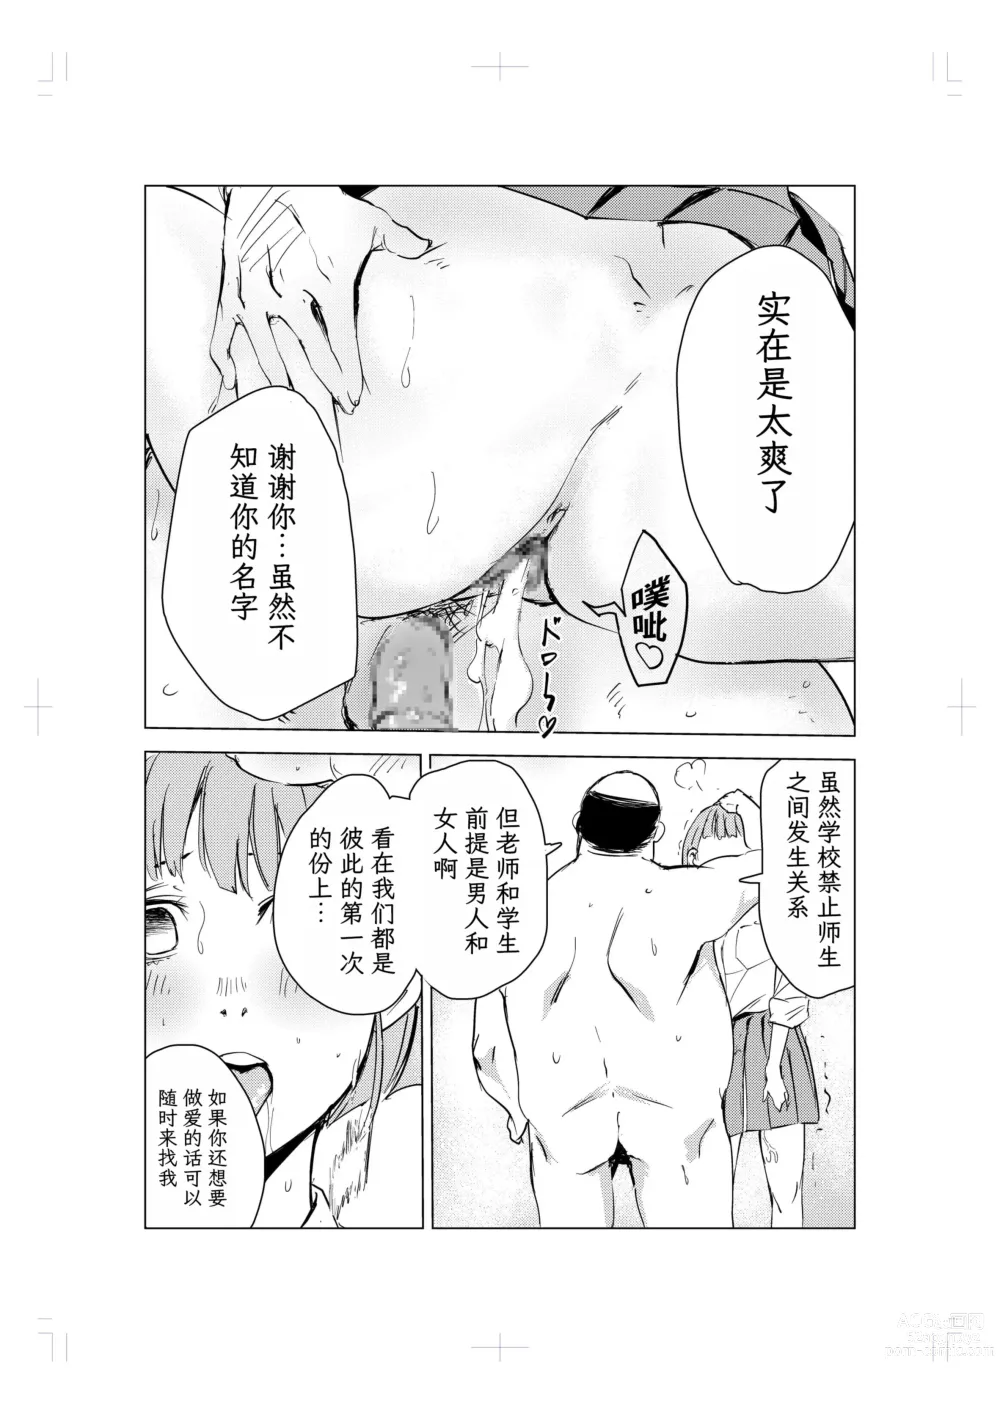 Page 49 of doujinshi 40-sai no Mahoutukai